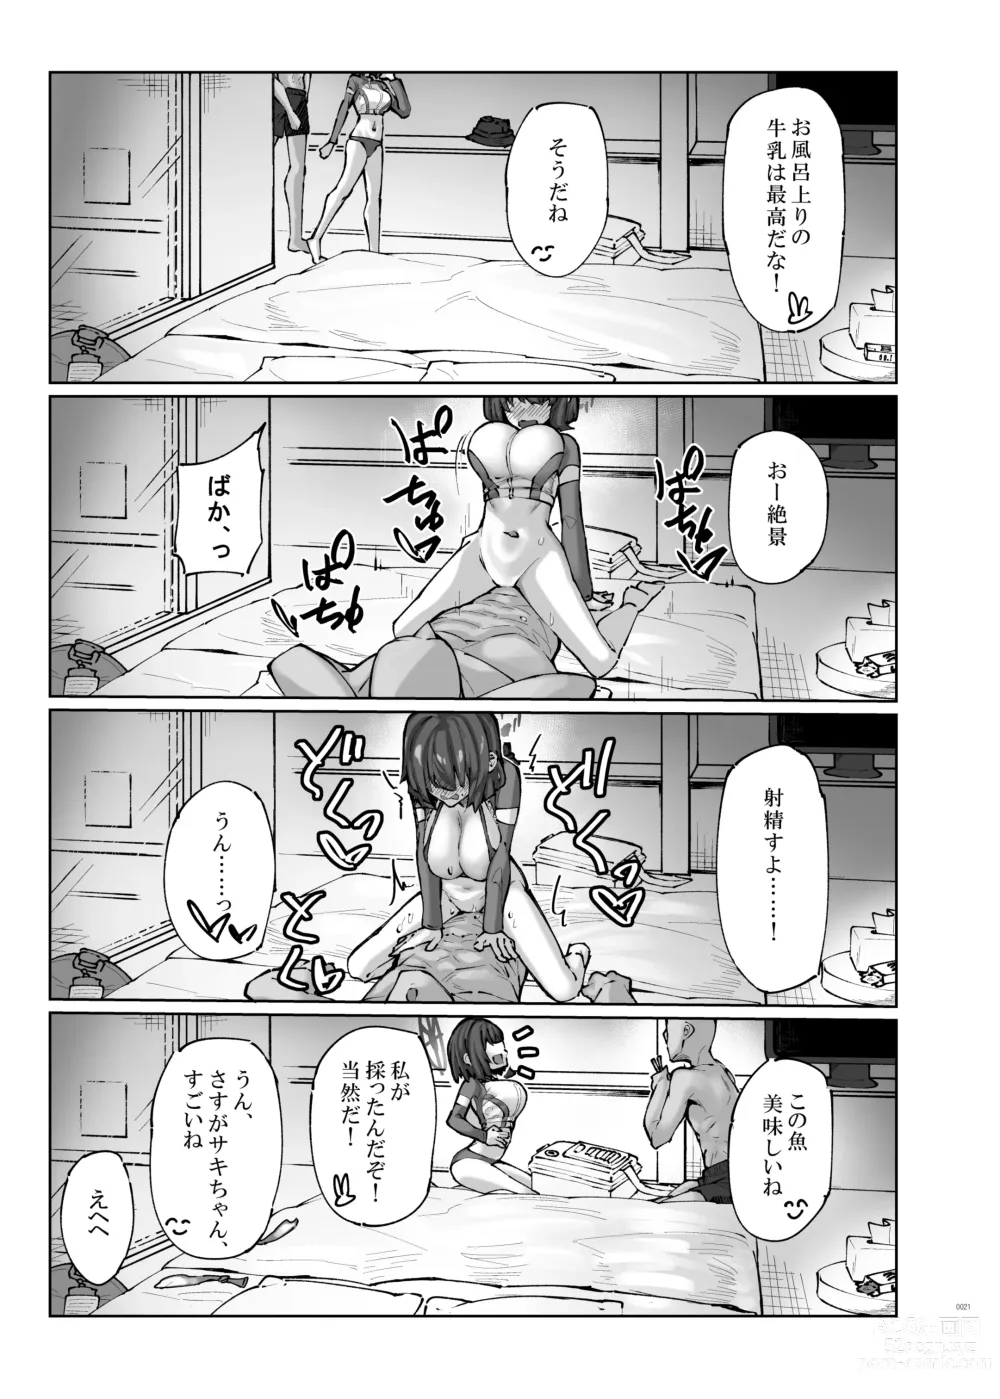 Page 21 of doujinshi HOT RABBIT